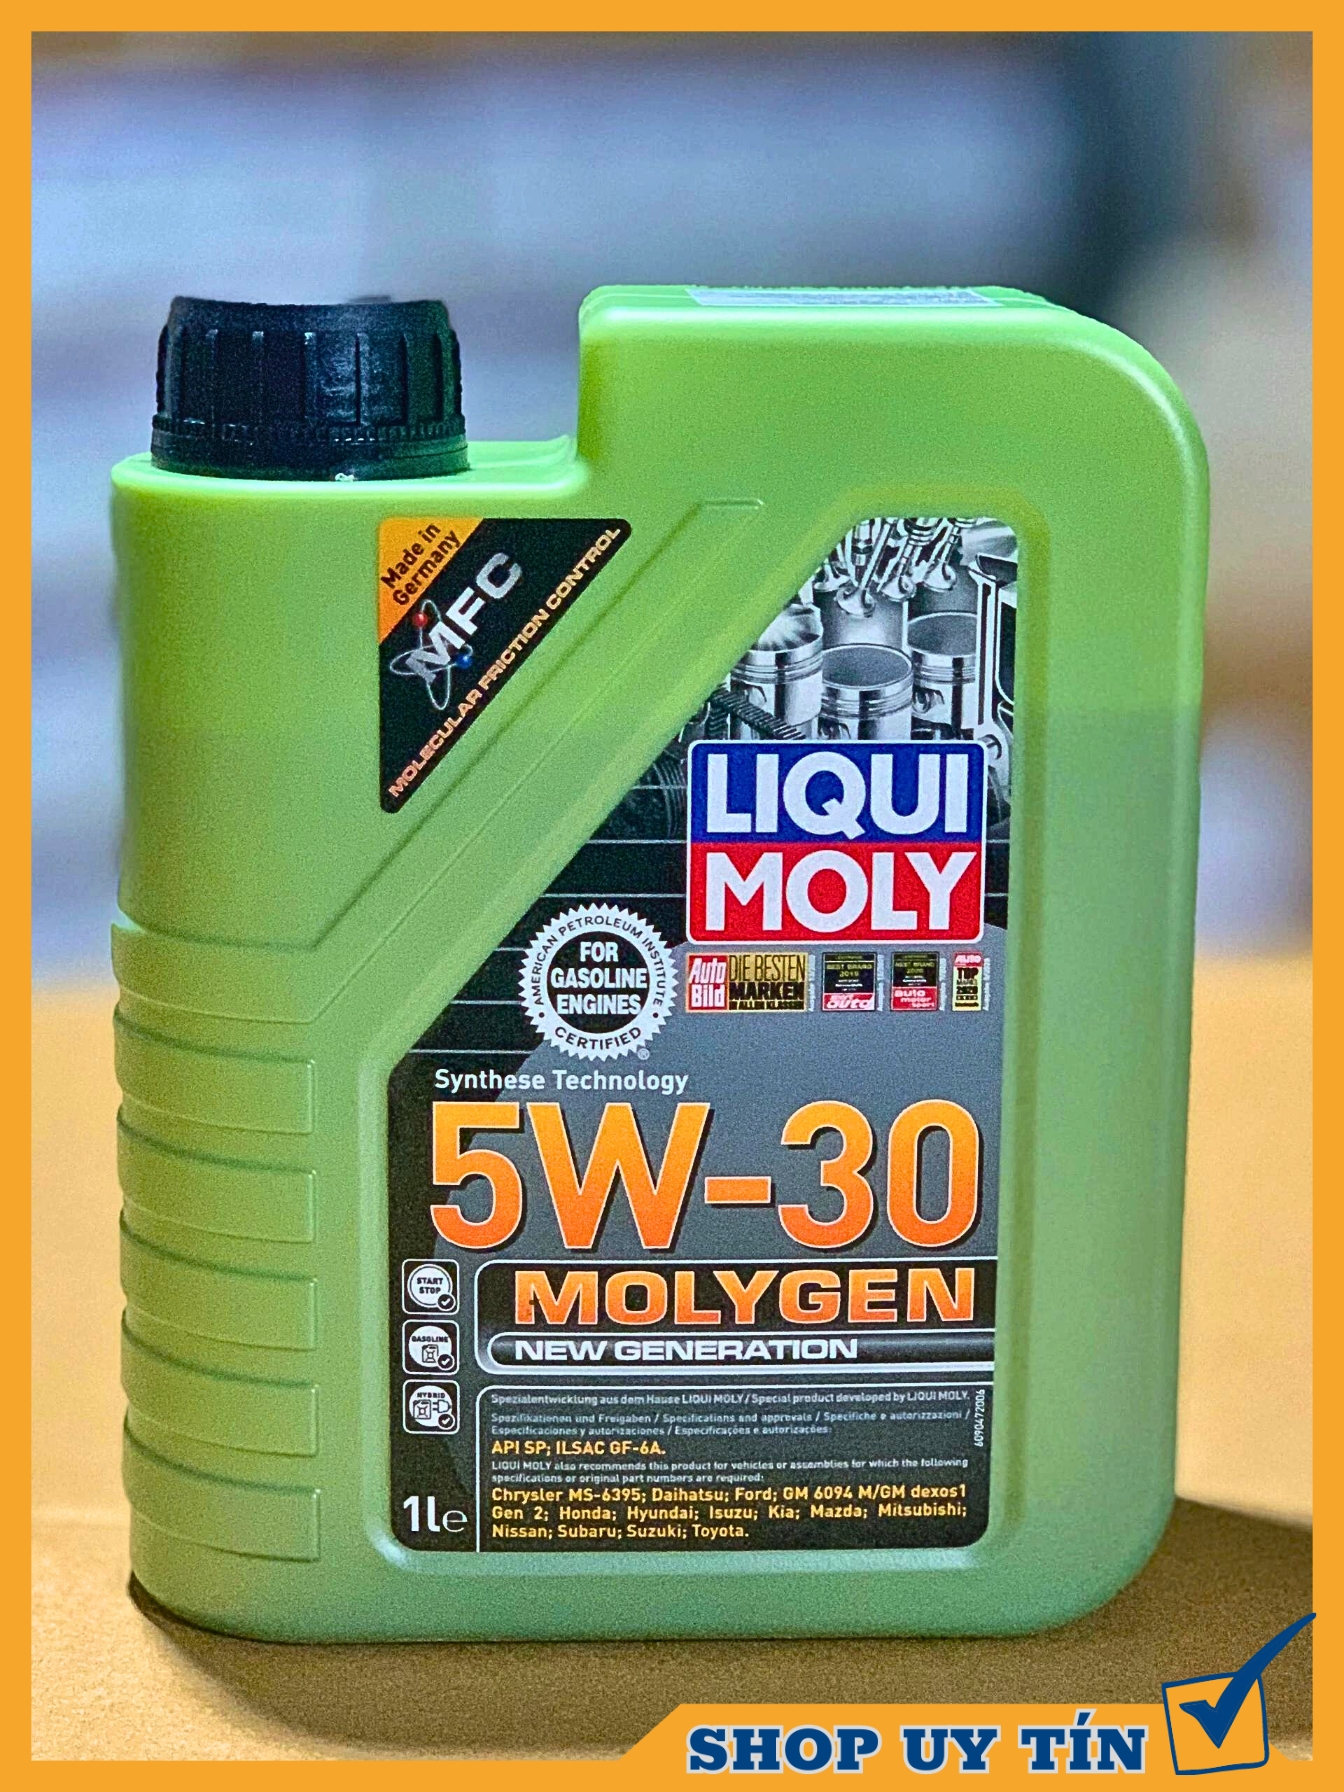 Dầu nhớt tổng hợp Liqui Moly Molygen 5w30 Api SN cho xe tay ga và ô tô dung tích 1000L nhập khẩu Đức